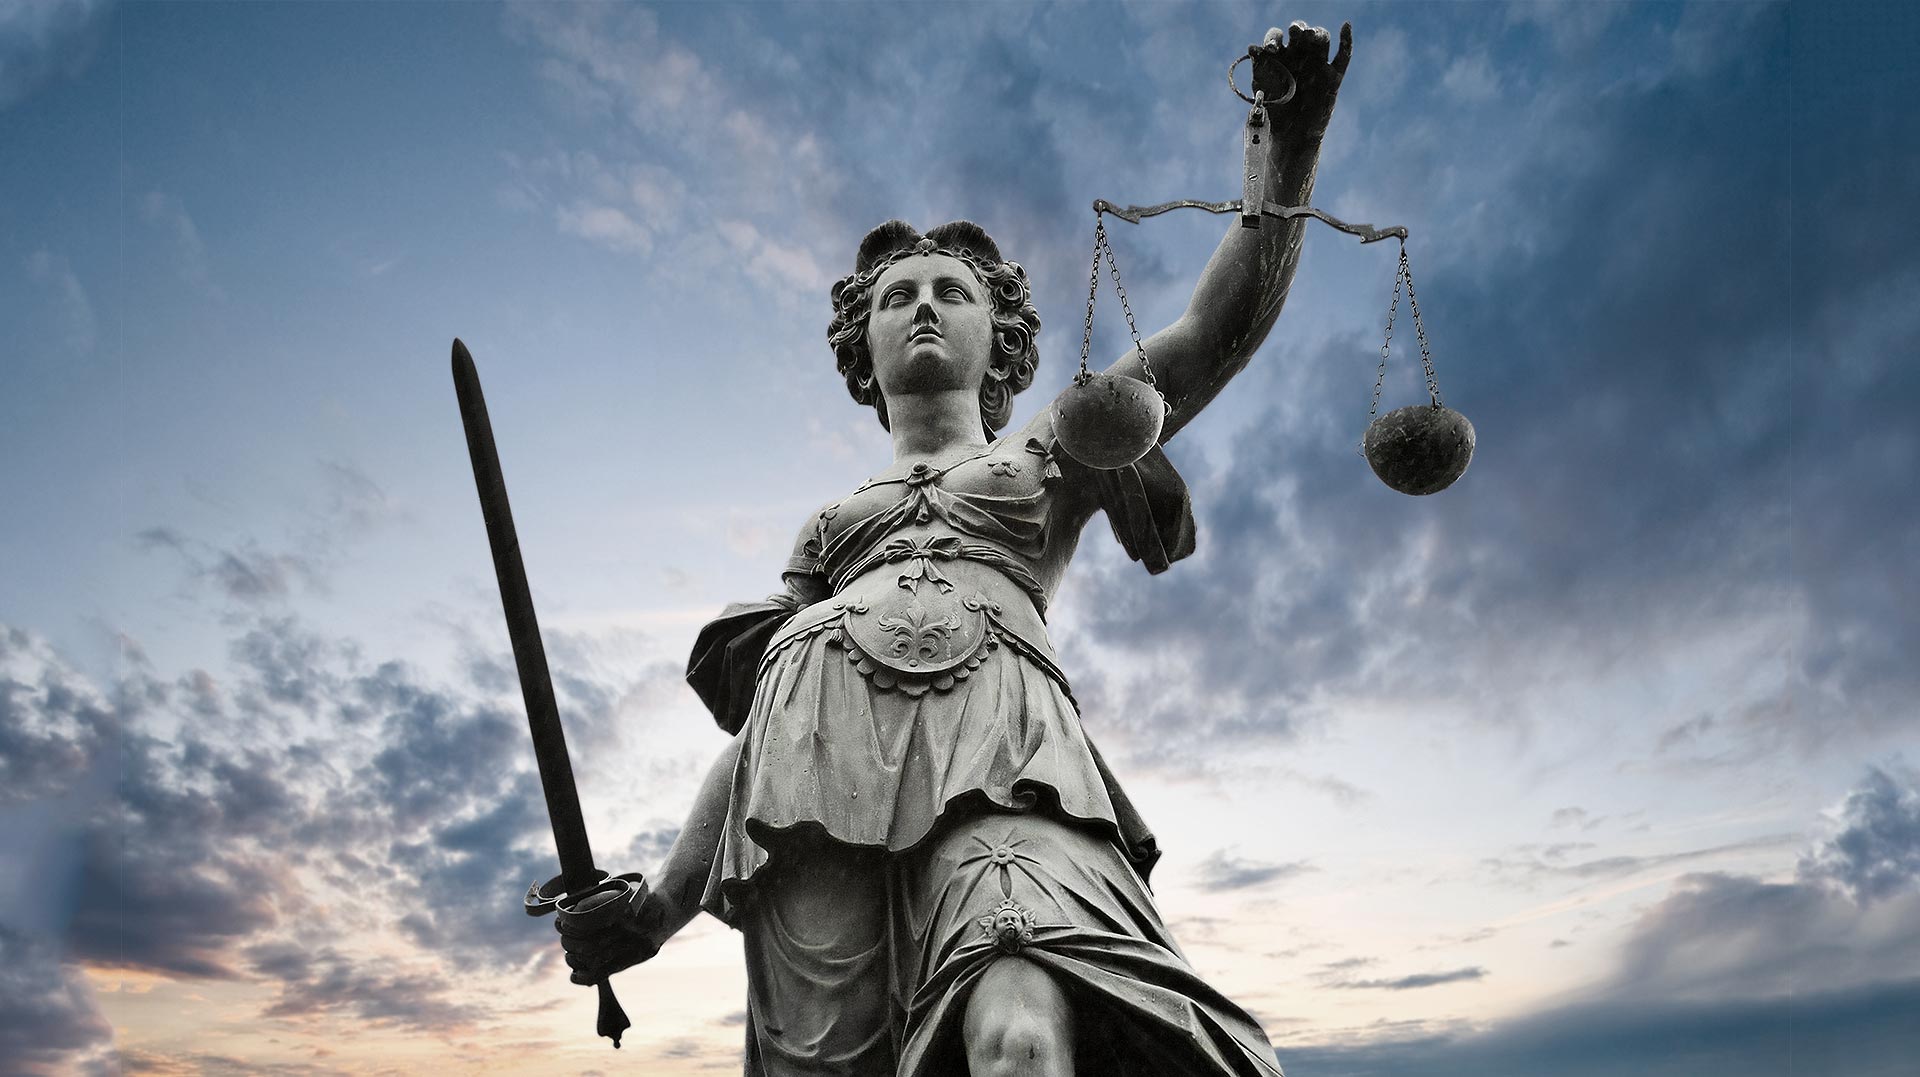 “Equal Justice Under Law”